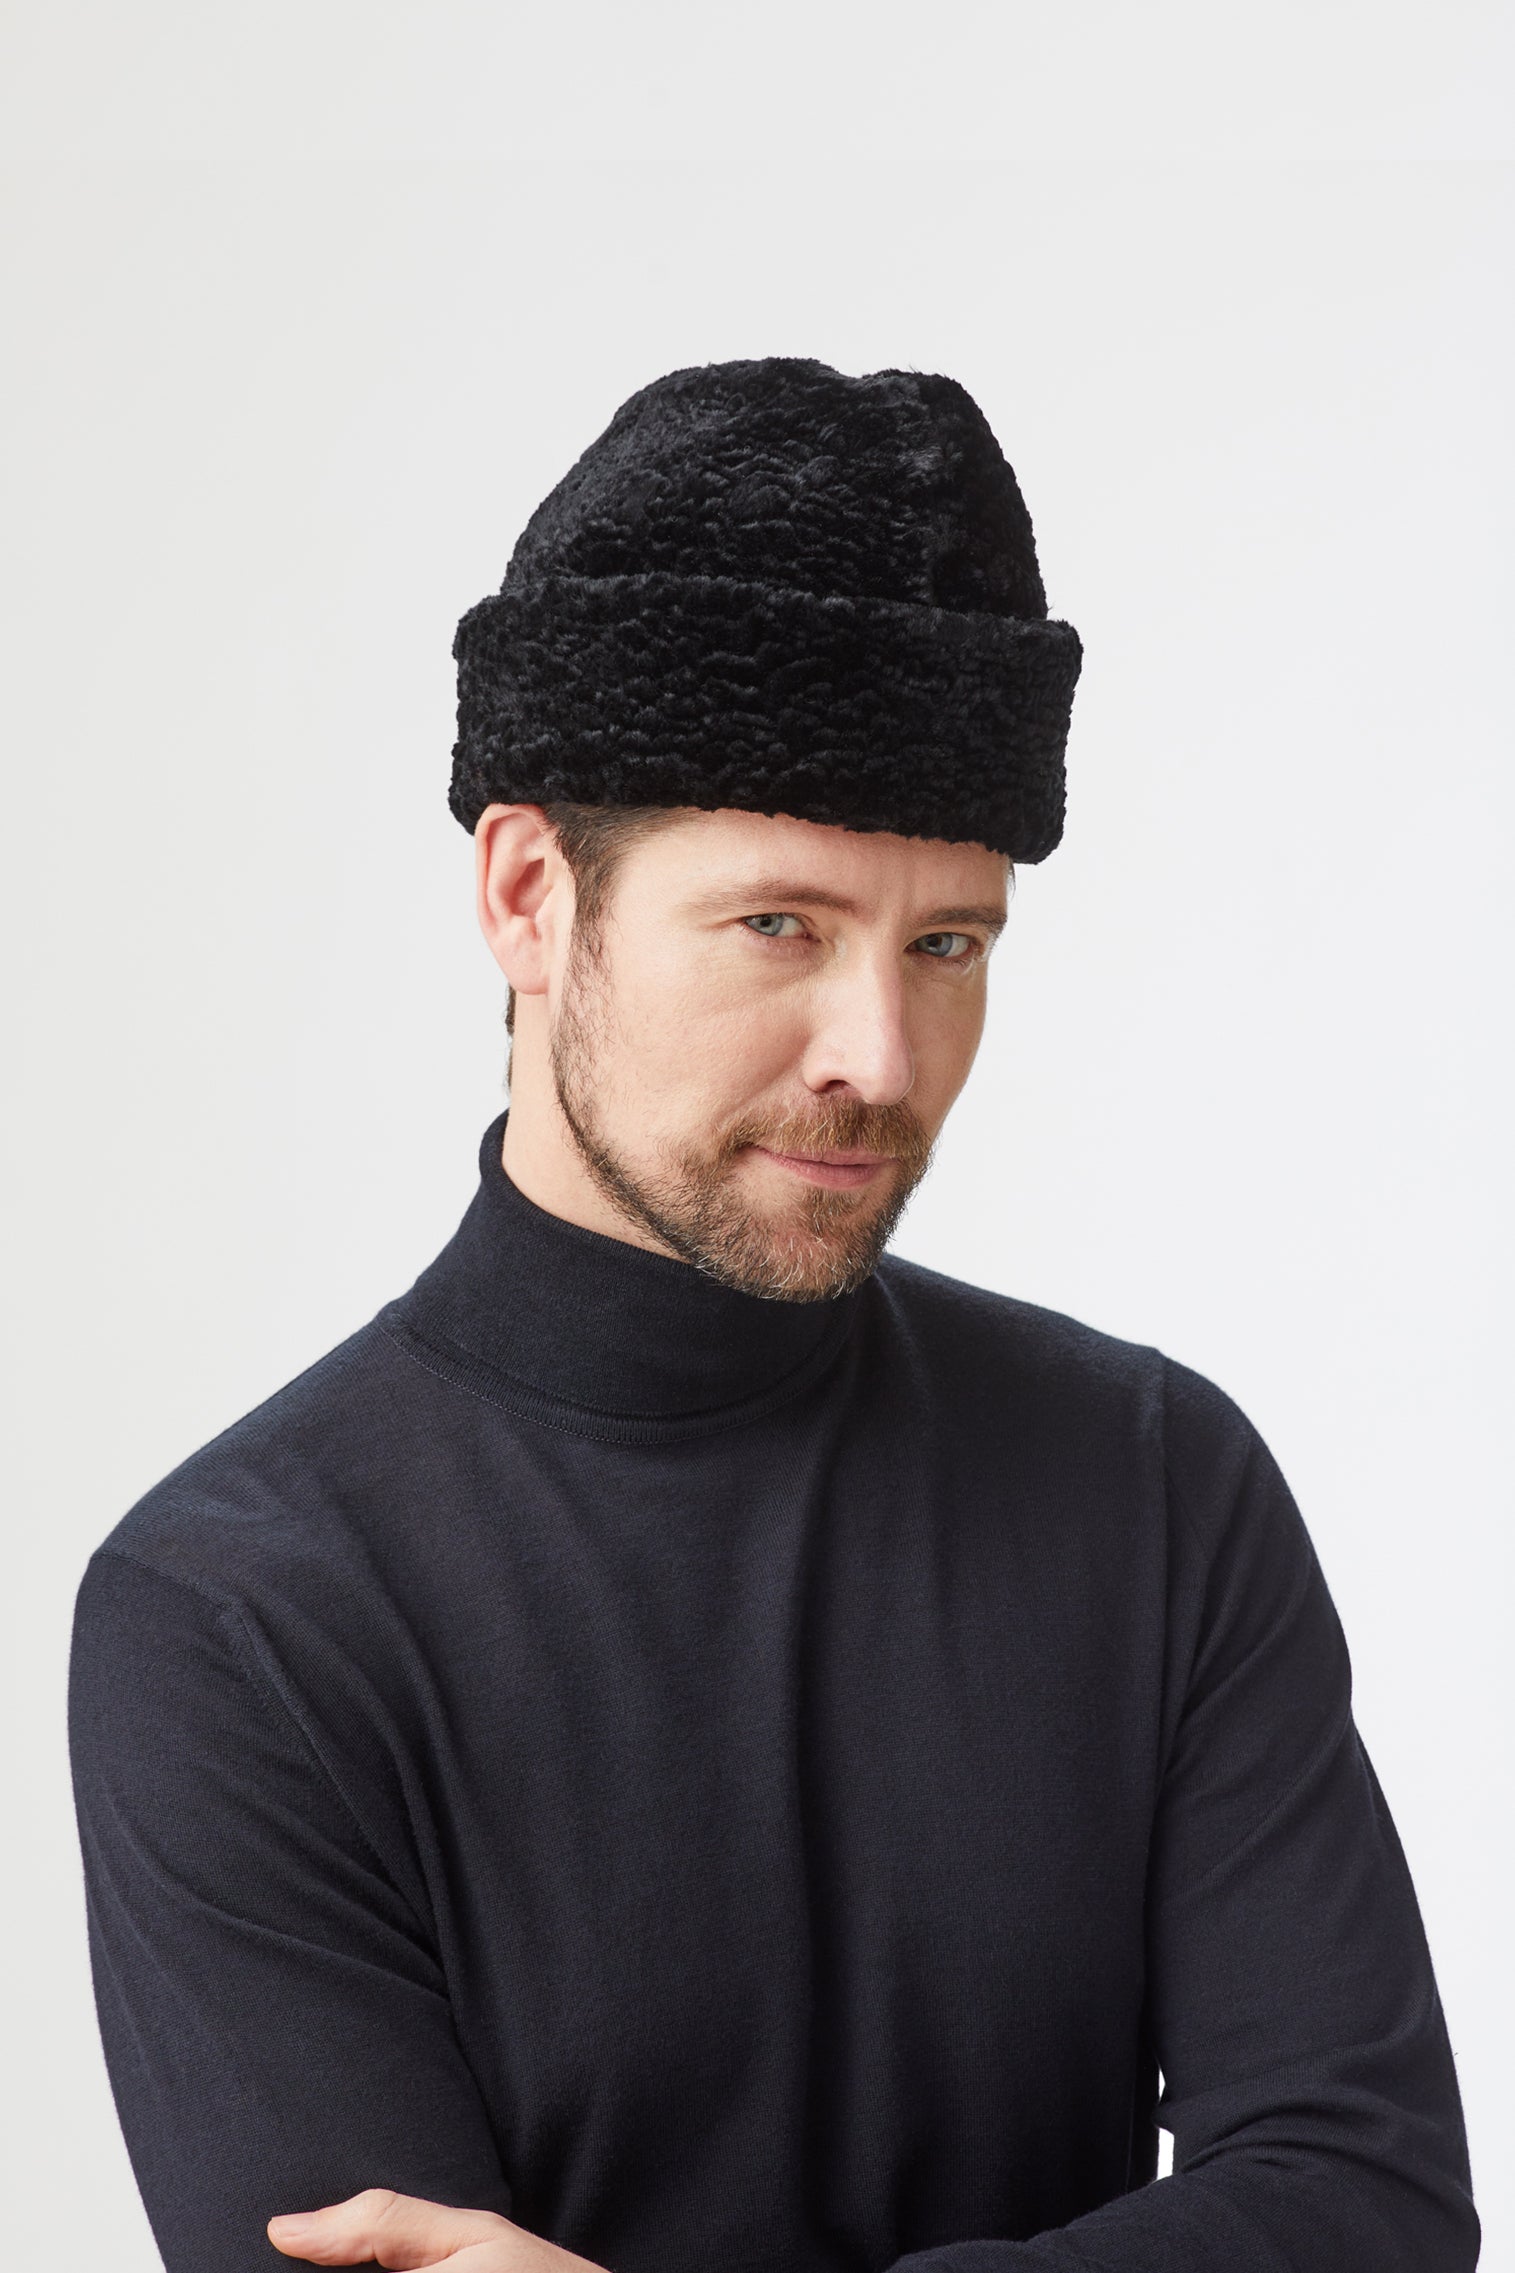 Astrakhan Faux Fur Hat - All Ready to Wear - Lock & Co. Hatters London UK